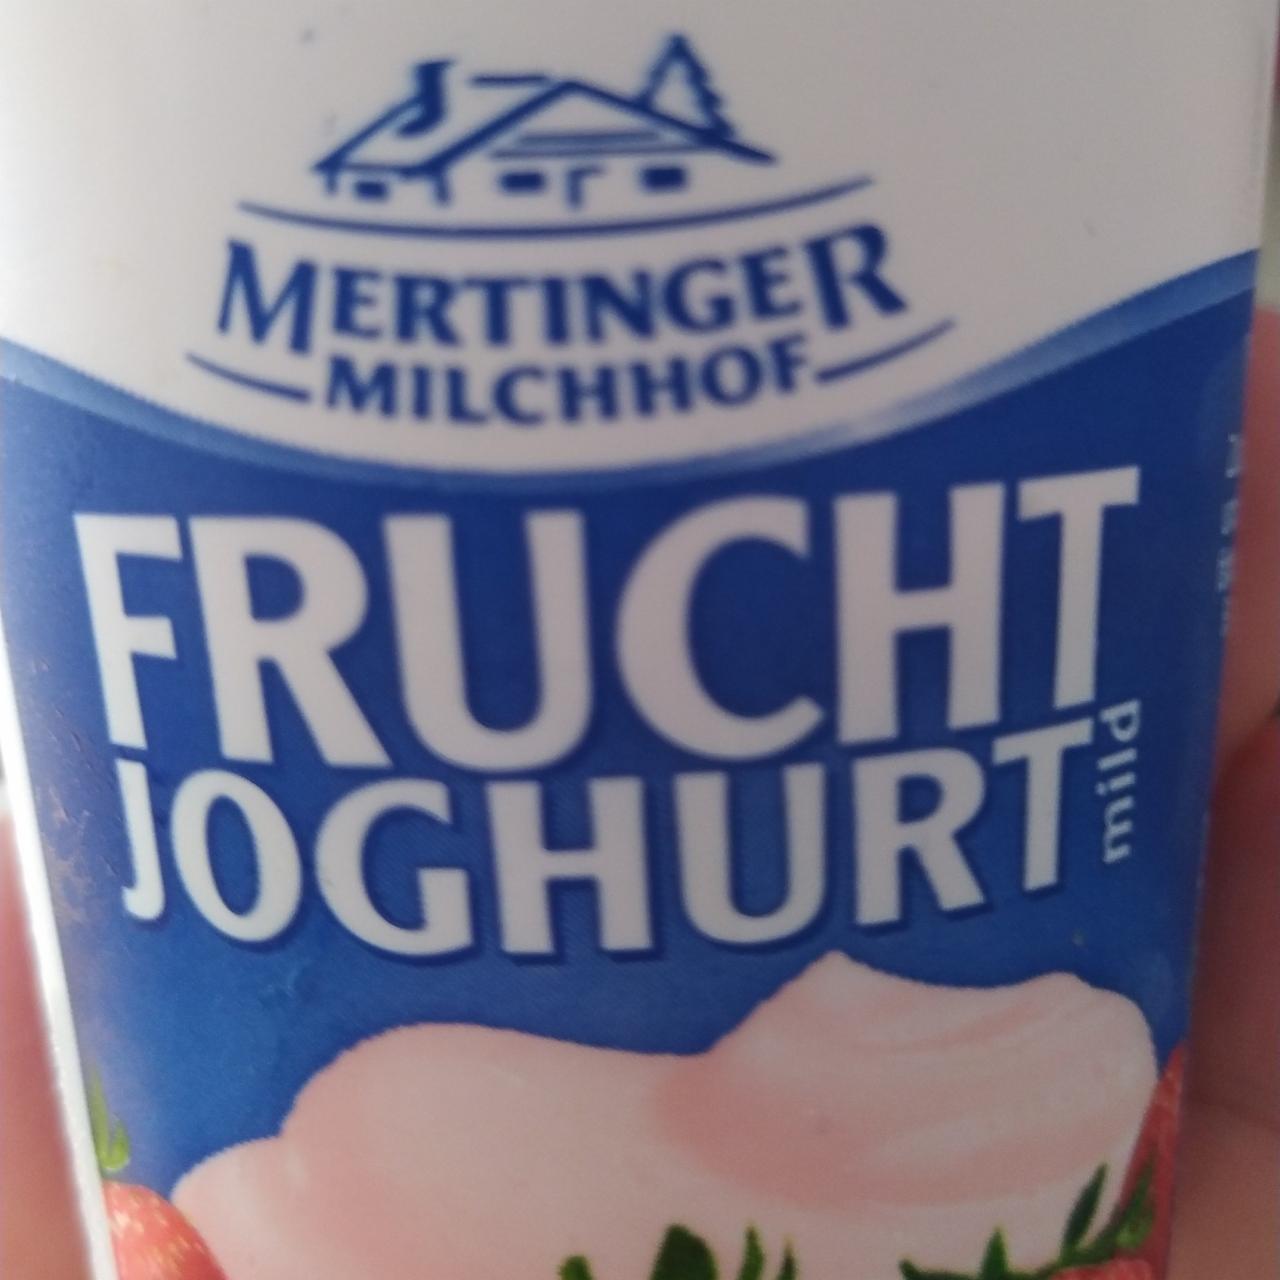 Fotografie - frucht joghurt Mertinger Milchhof